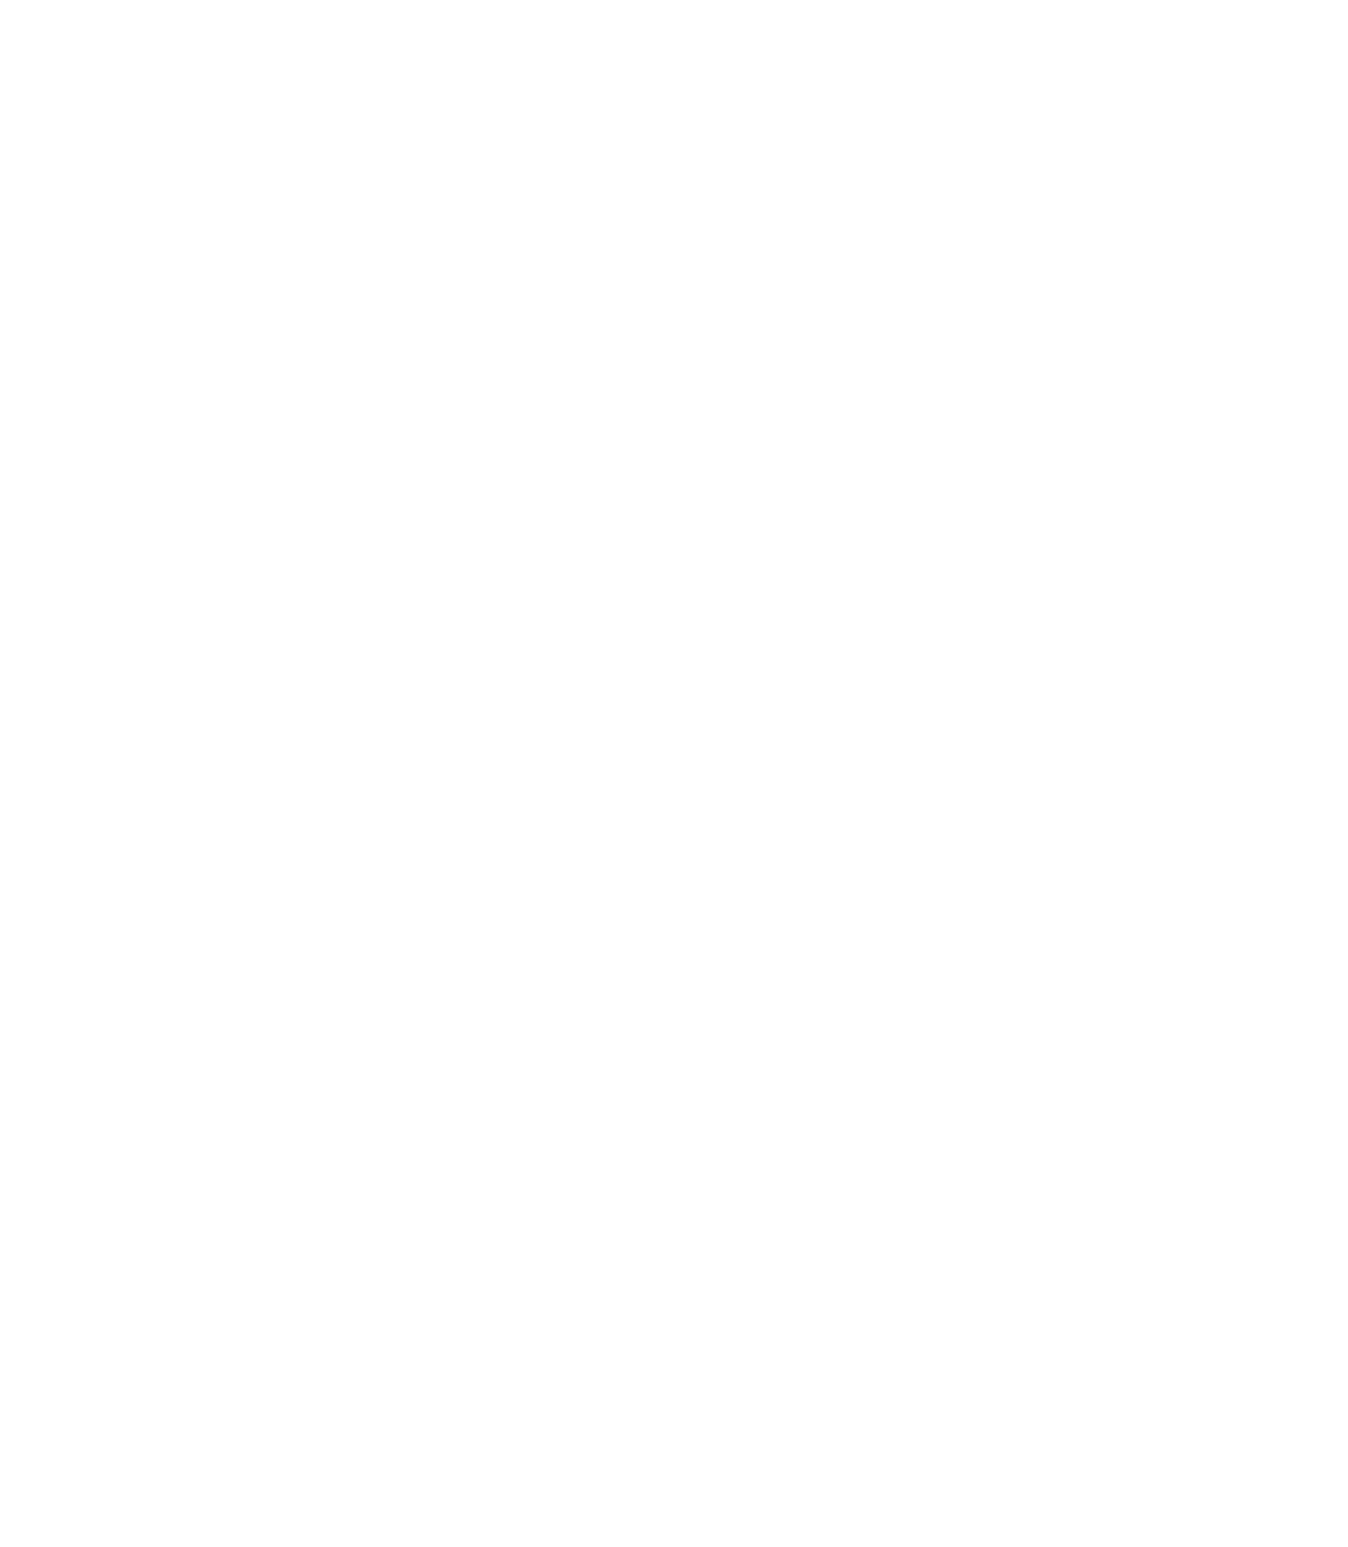 Nordic Entertainment Group (NENT Group) logo pour fonds sombres (PNG transparent)